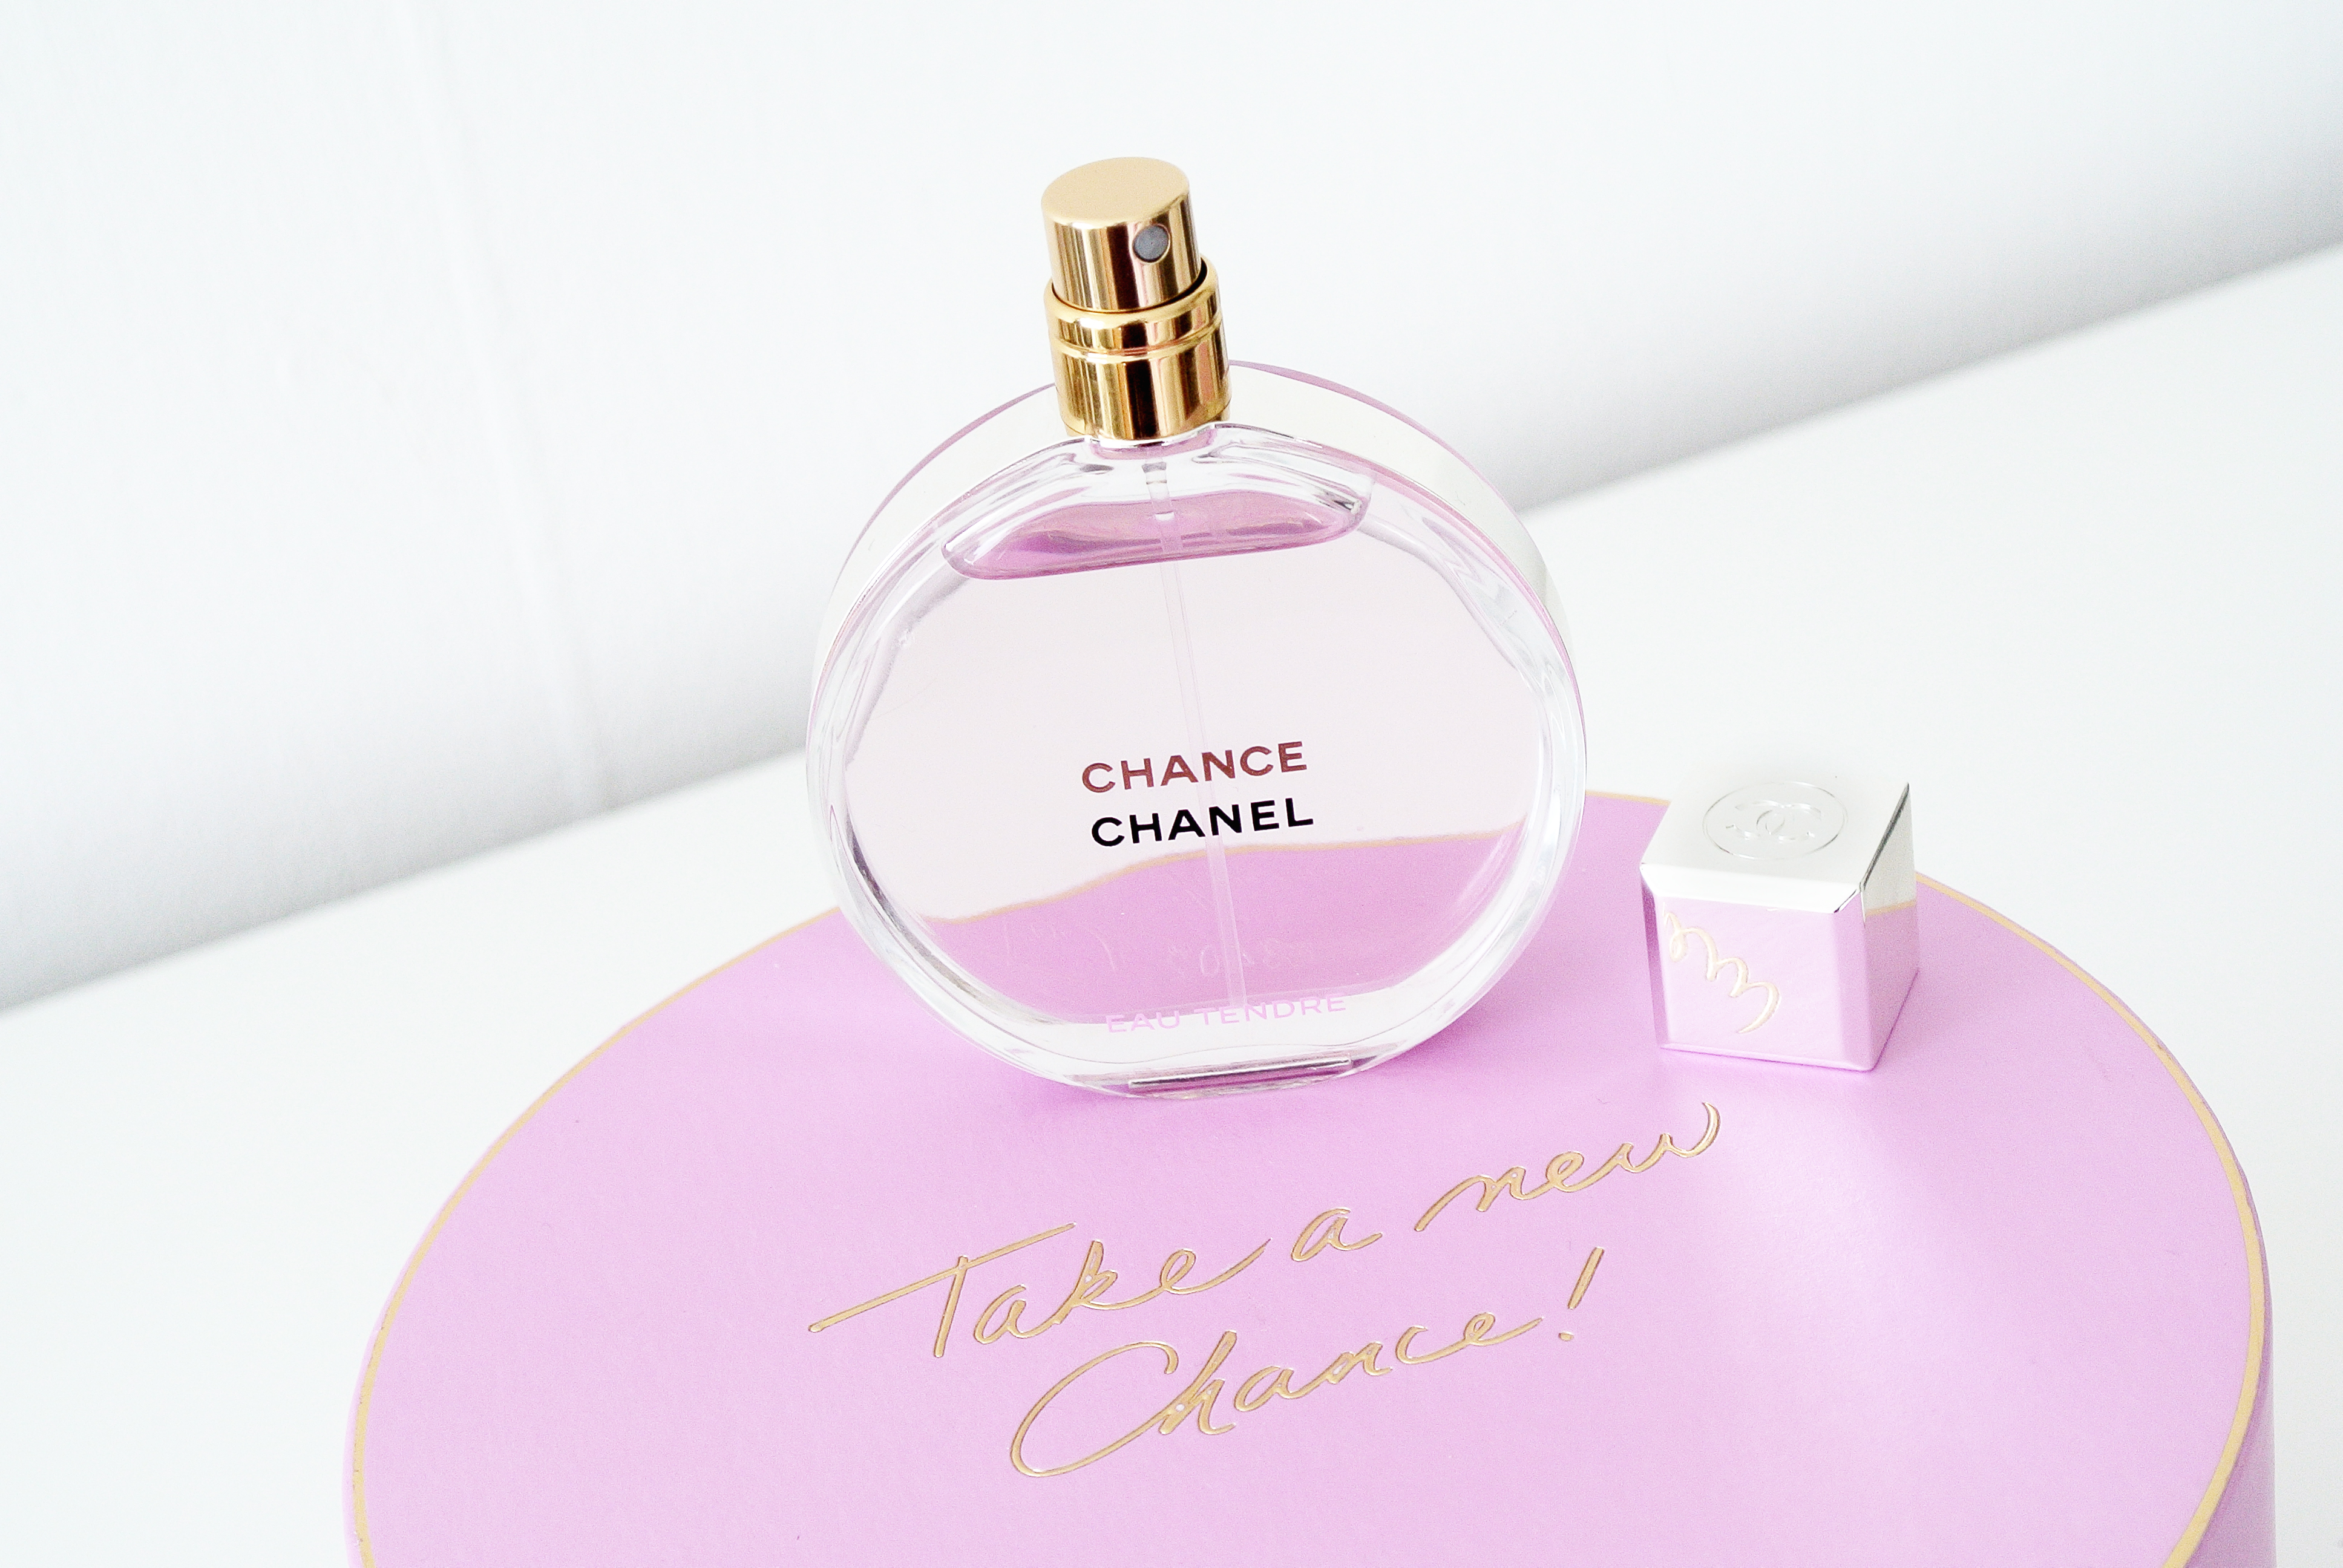 CHANEL Chance Eau Tendre Eau de Parfum (2019) Review - Anita Michaela